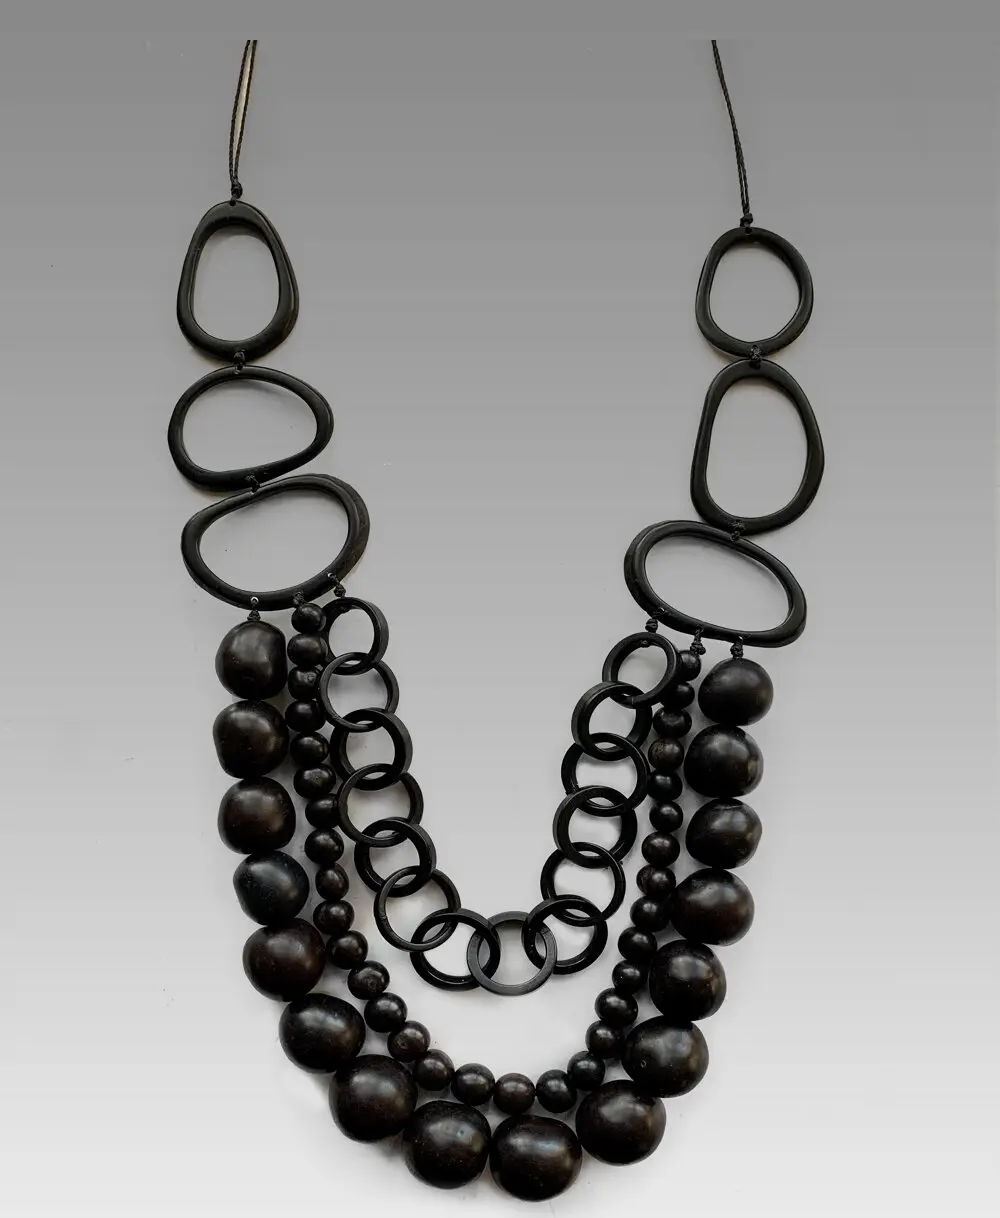 Ожерелье Nuit Noire, изготовленное из орехов тагуа в форме петель и кругов, семян асаи, орехов бомбона и органического хлопкового шнура.
